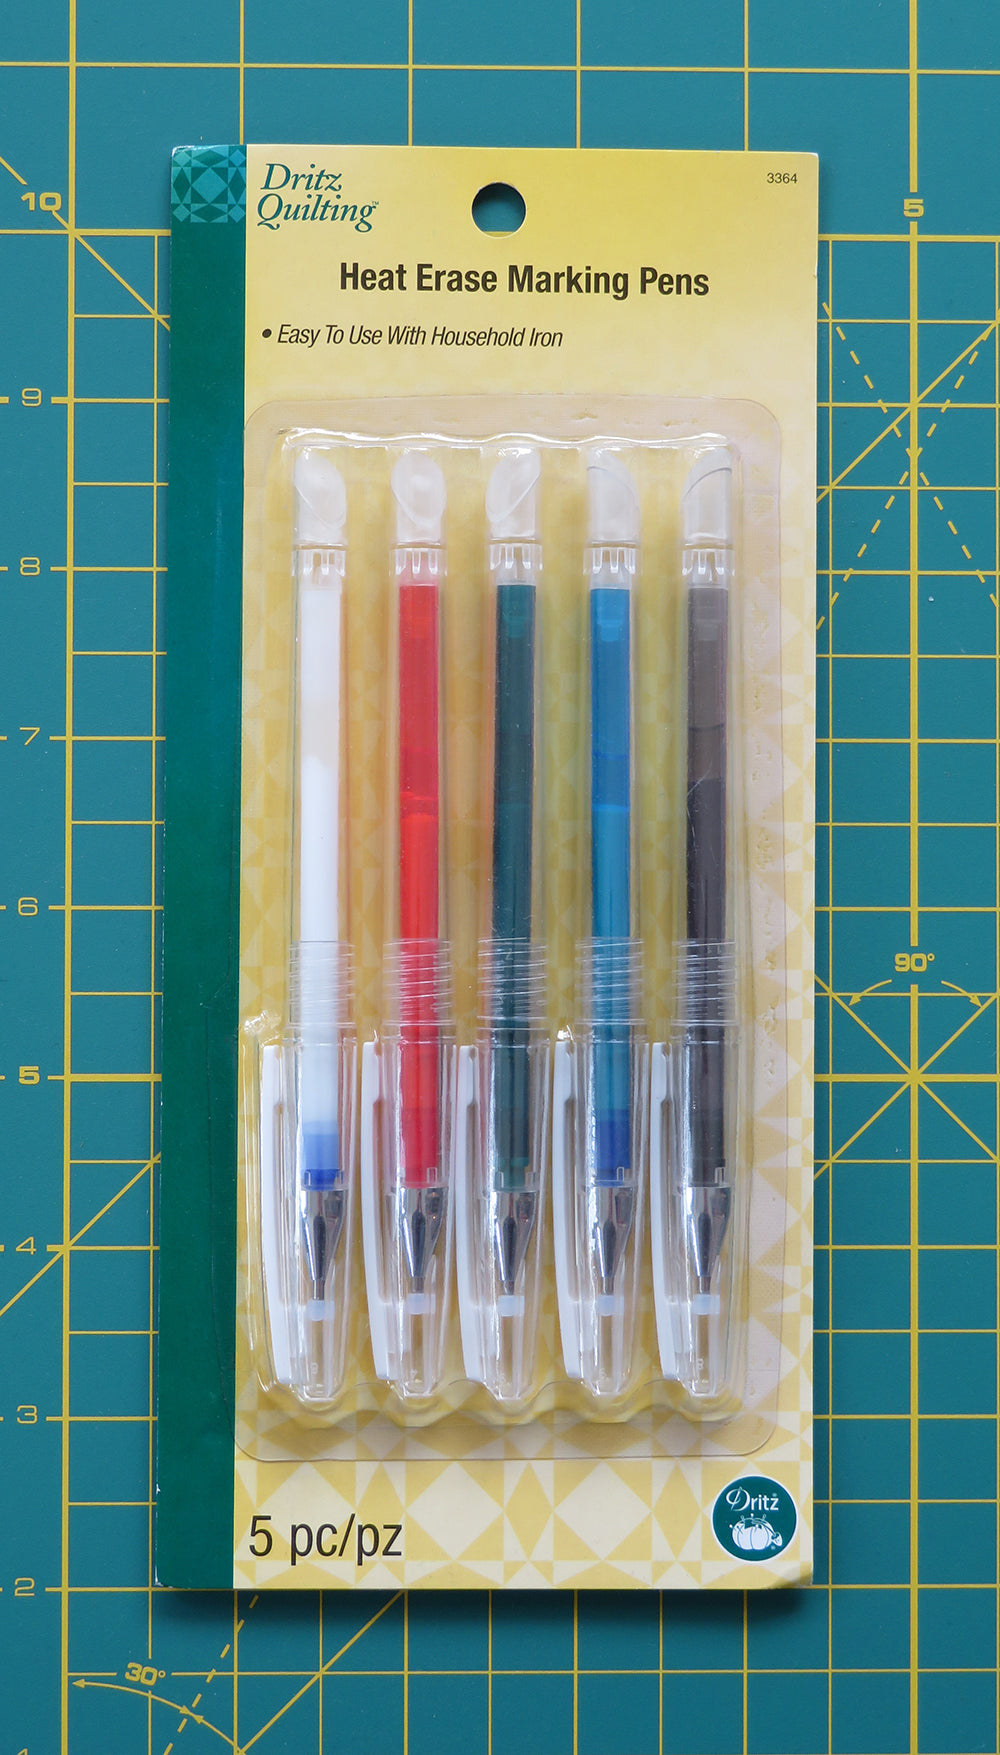 Heat Erase Marking Pens